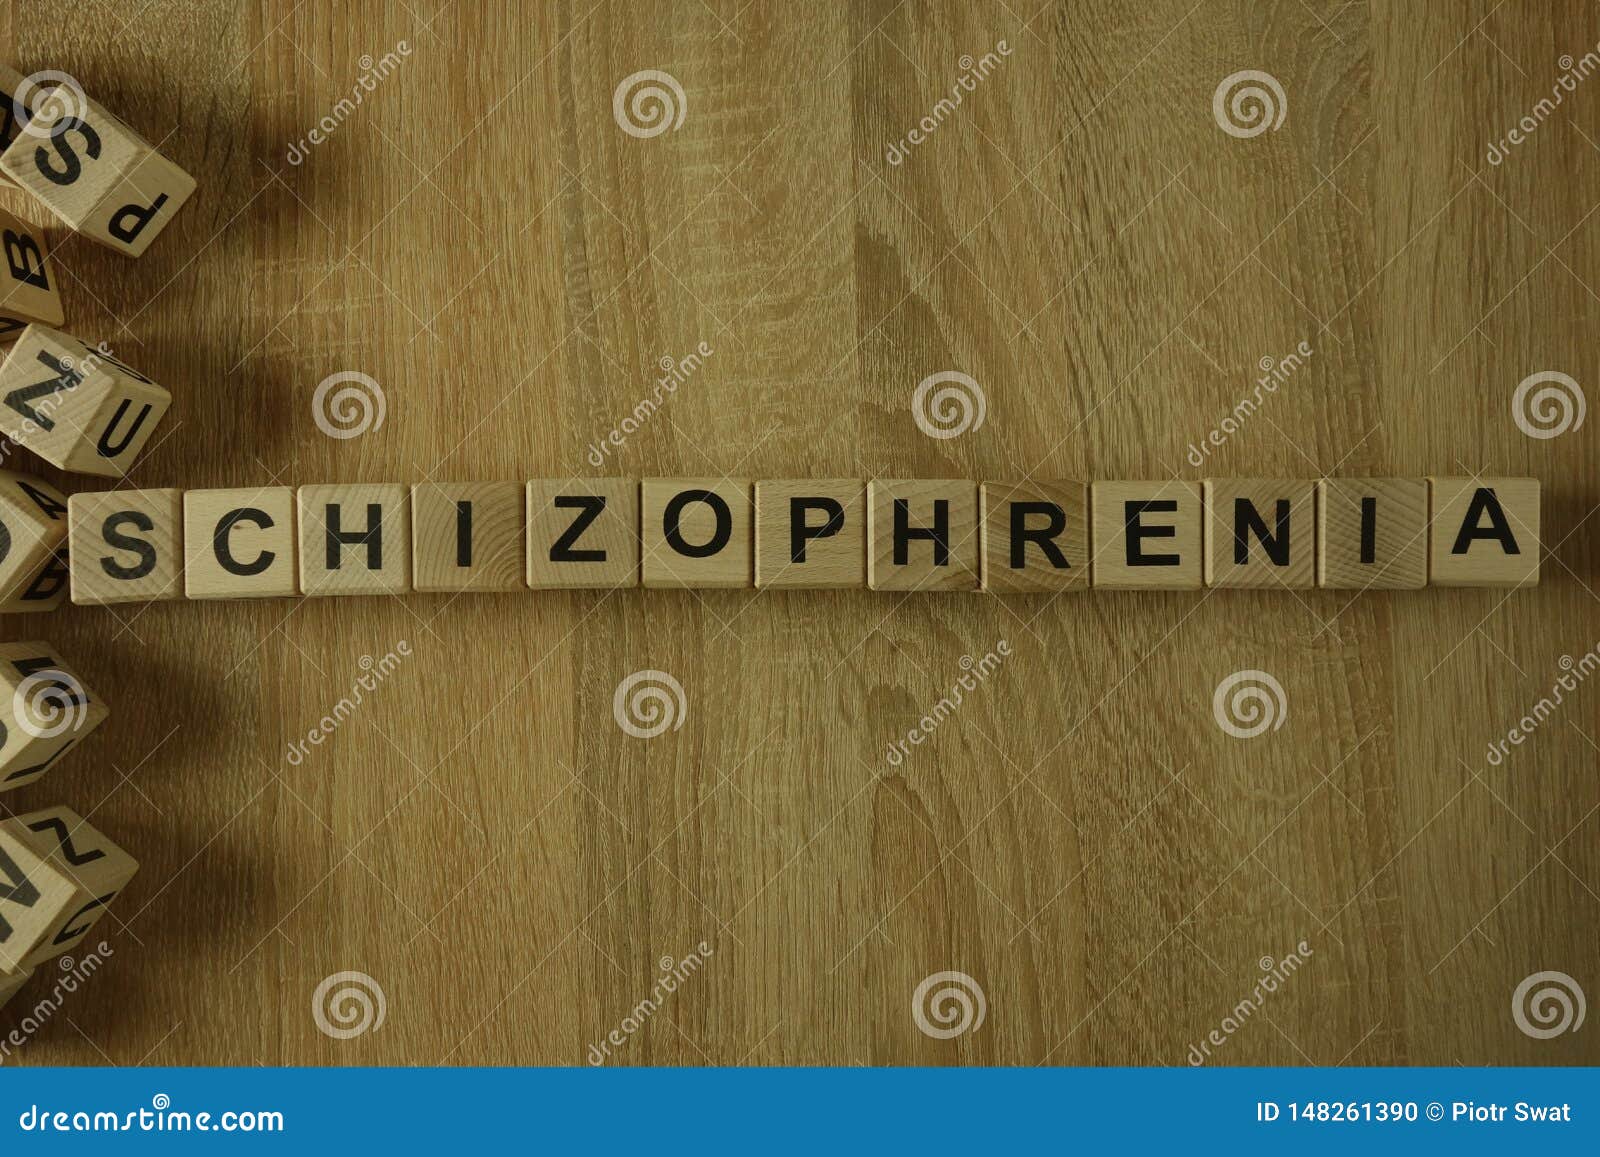 schizophrenia word from wooden blocks